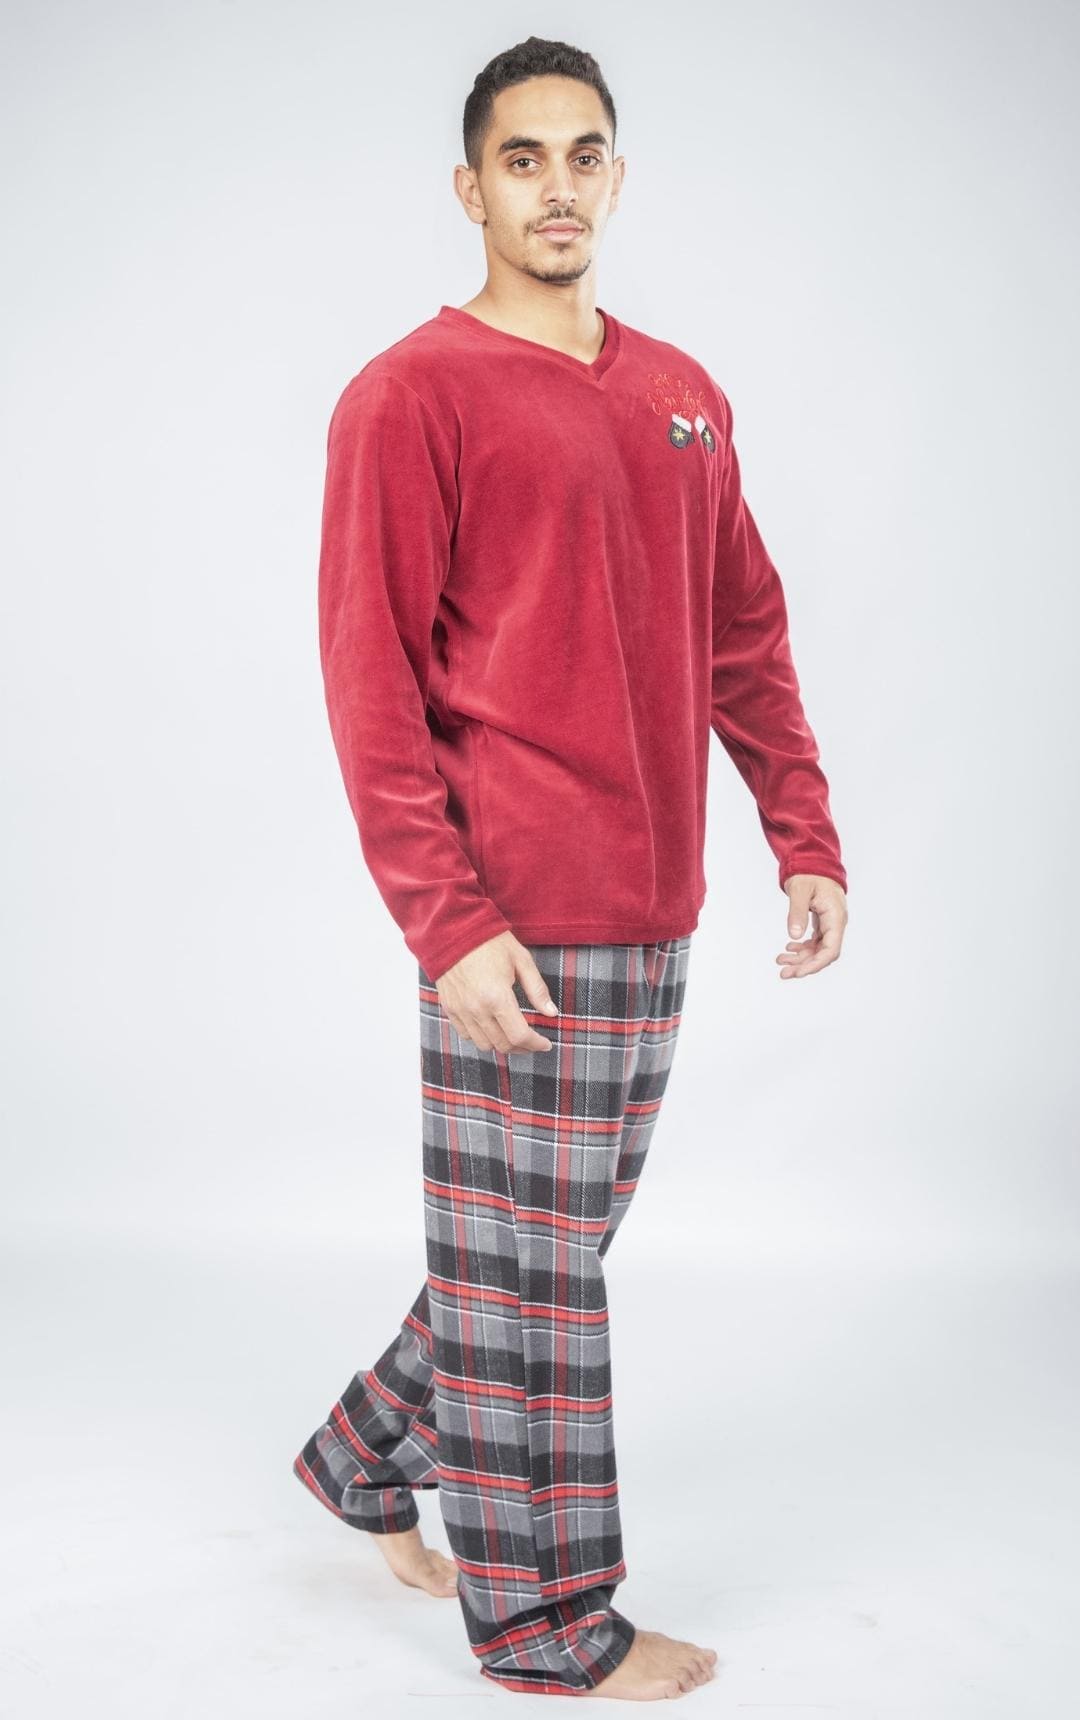 Christmas V-Neck Men Pajama with Check Pants